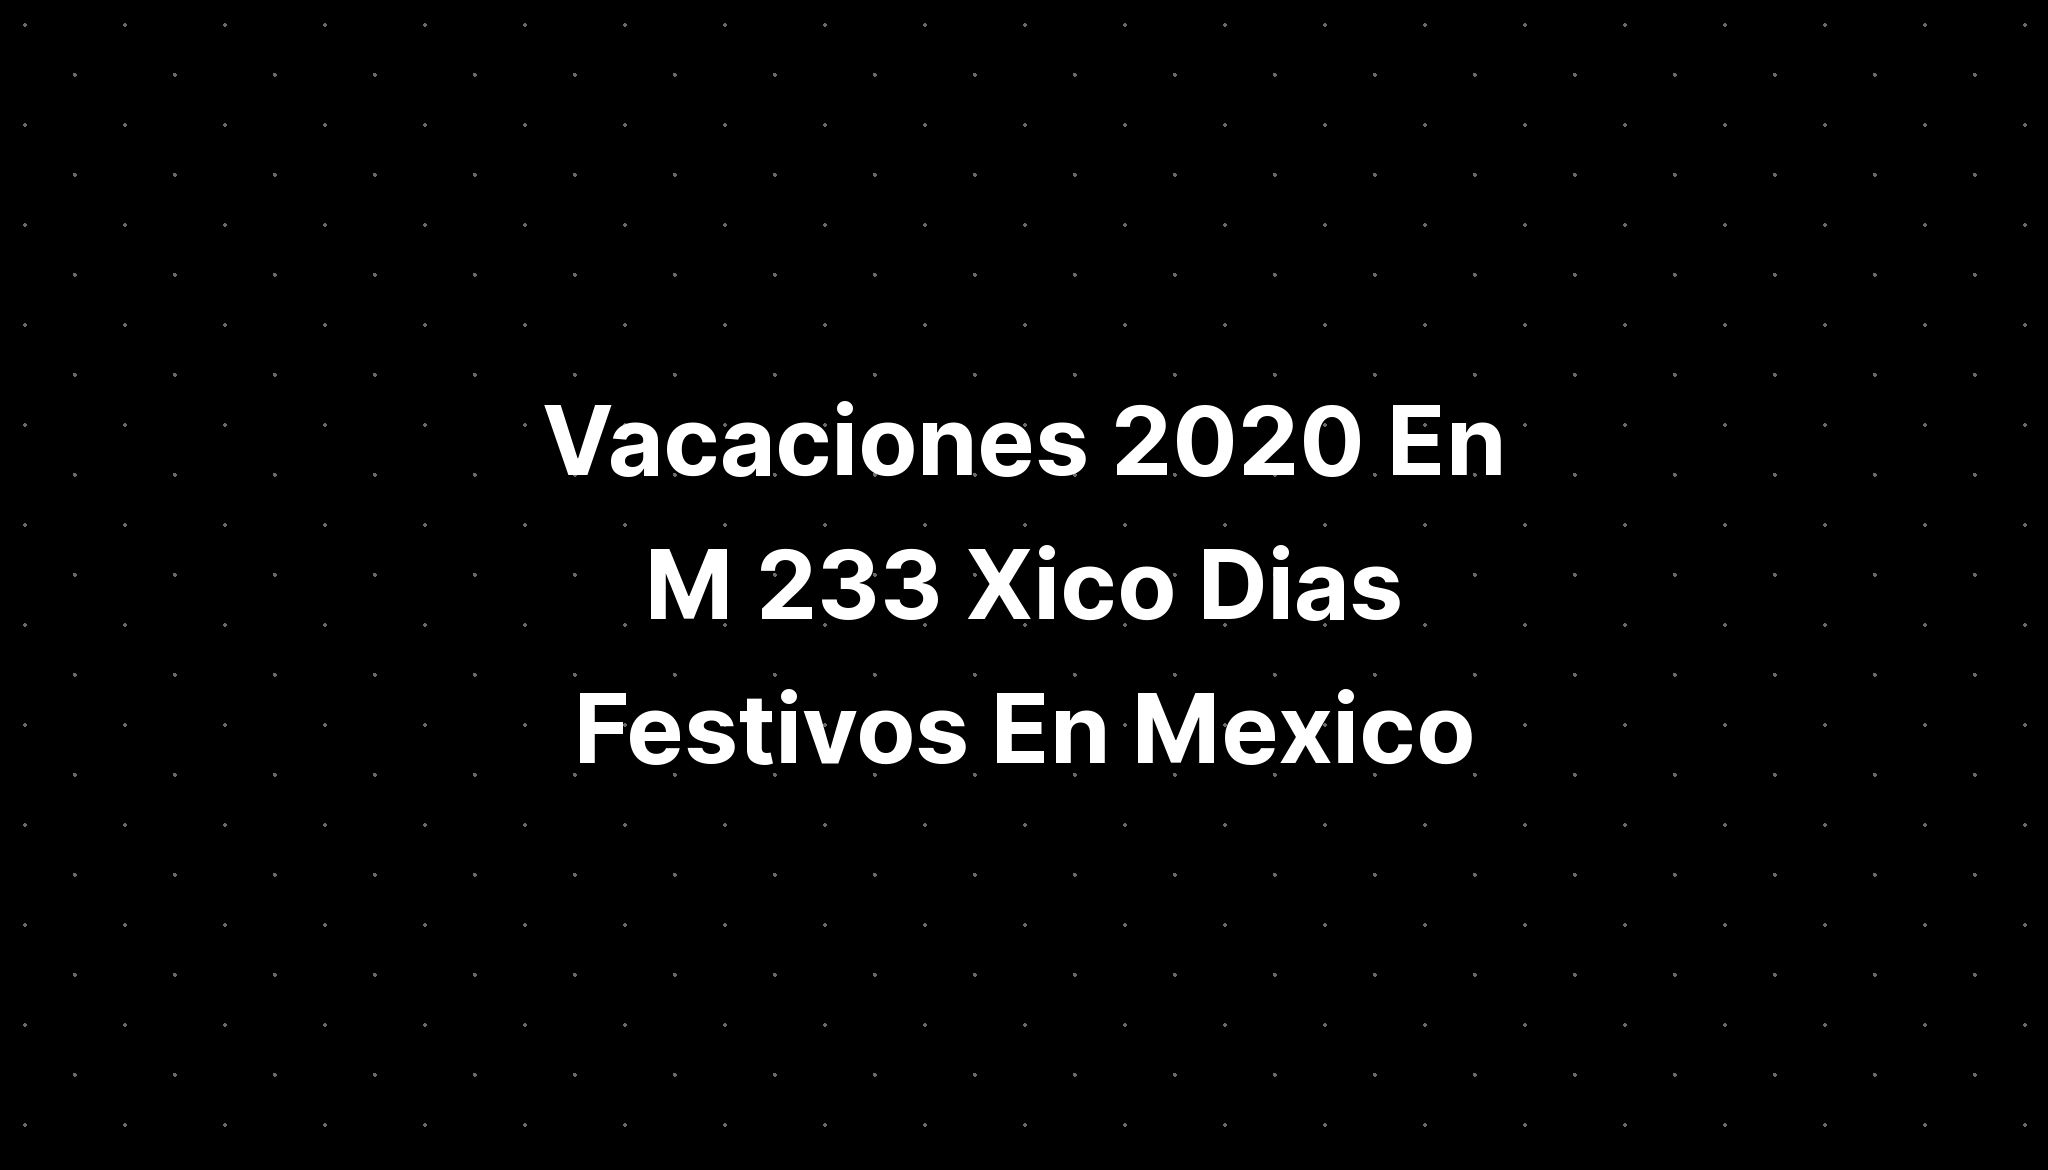 Vacaciones En M Xico Dias Festivos En Mexico The Best Porn Website